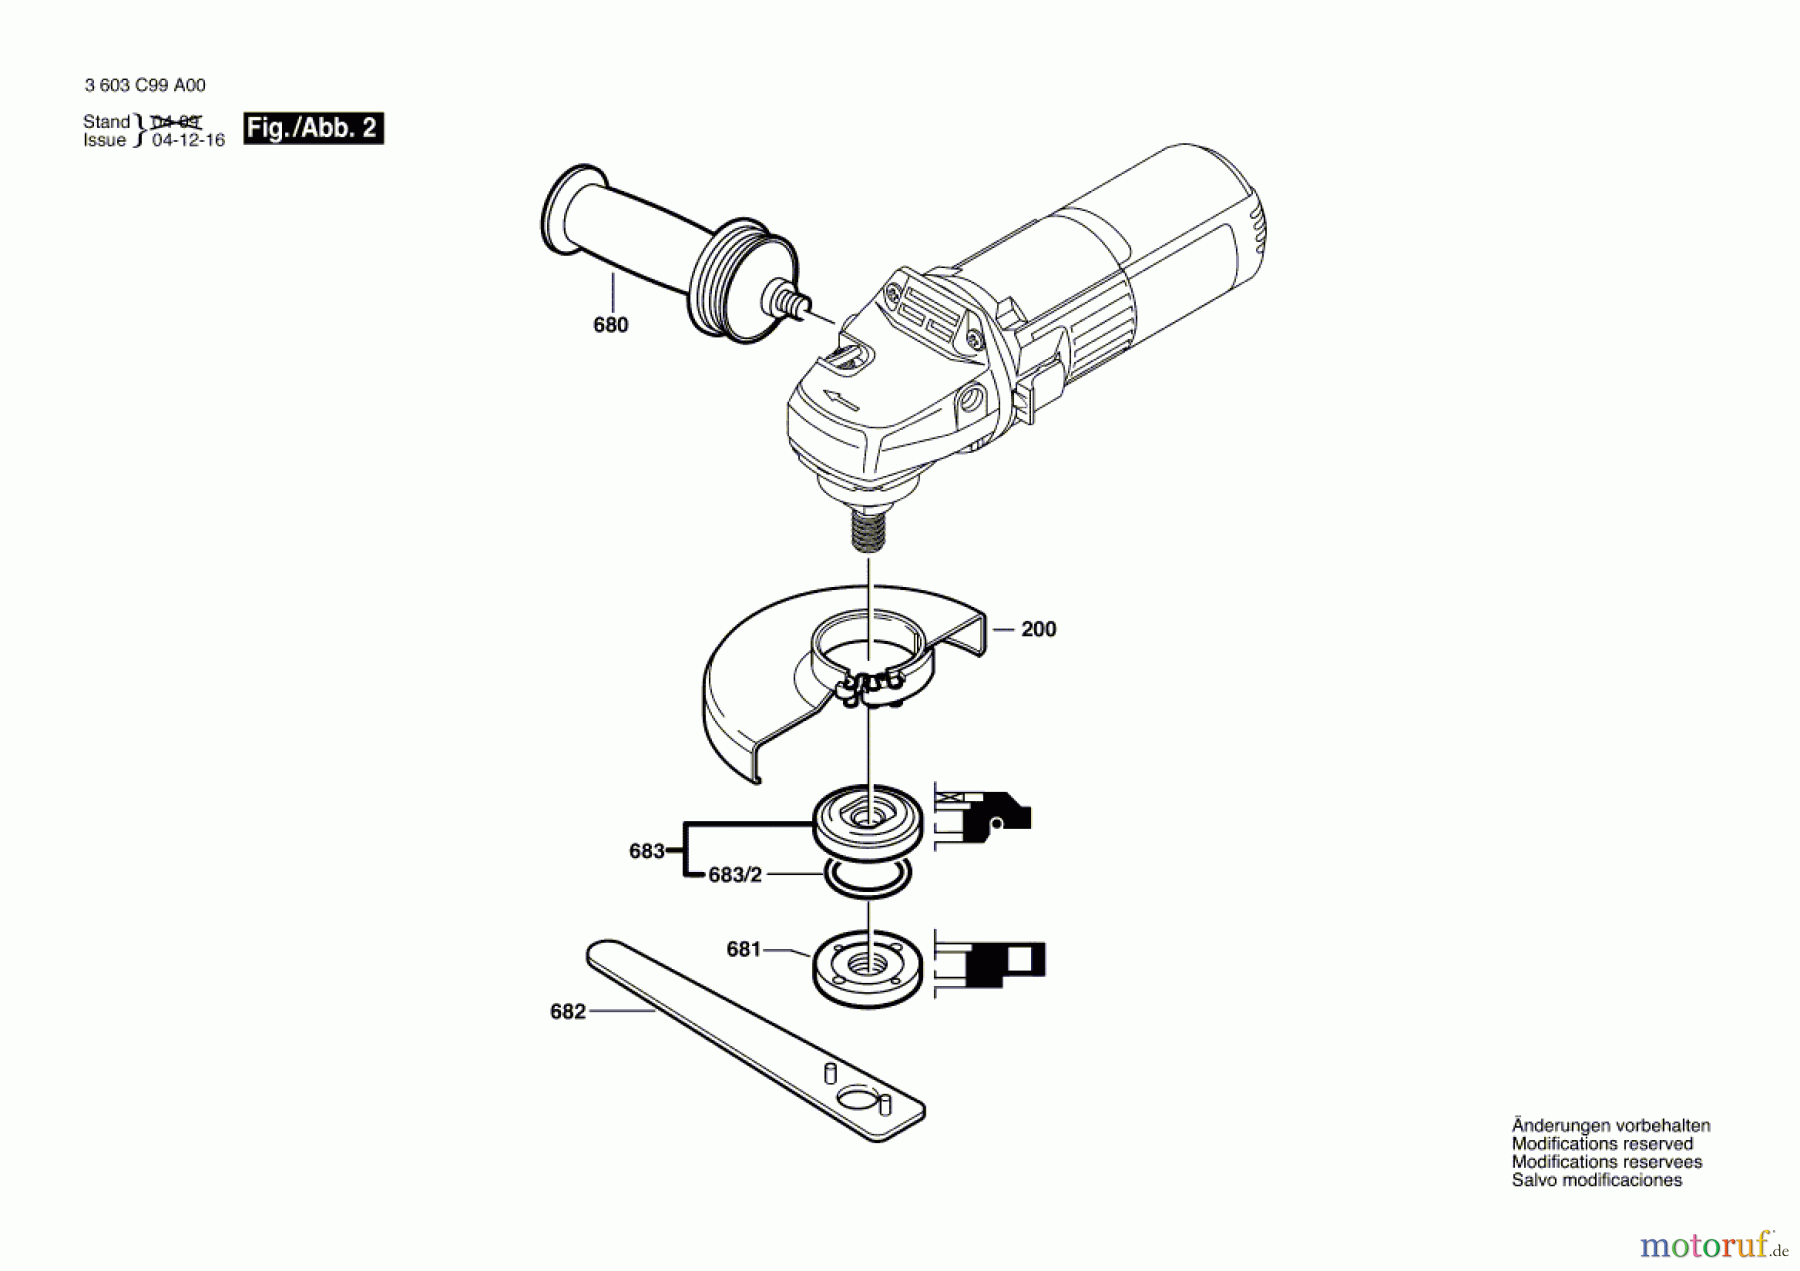  Bosch Werkzeug Winkelschleifer PWS Edition Seite 2